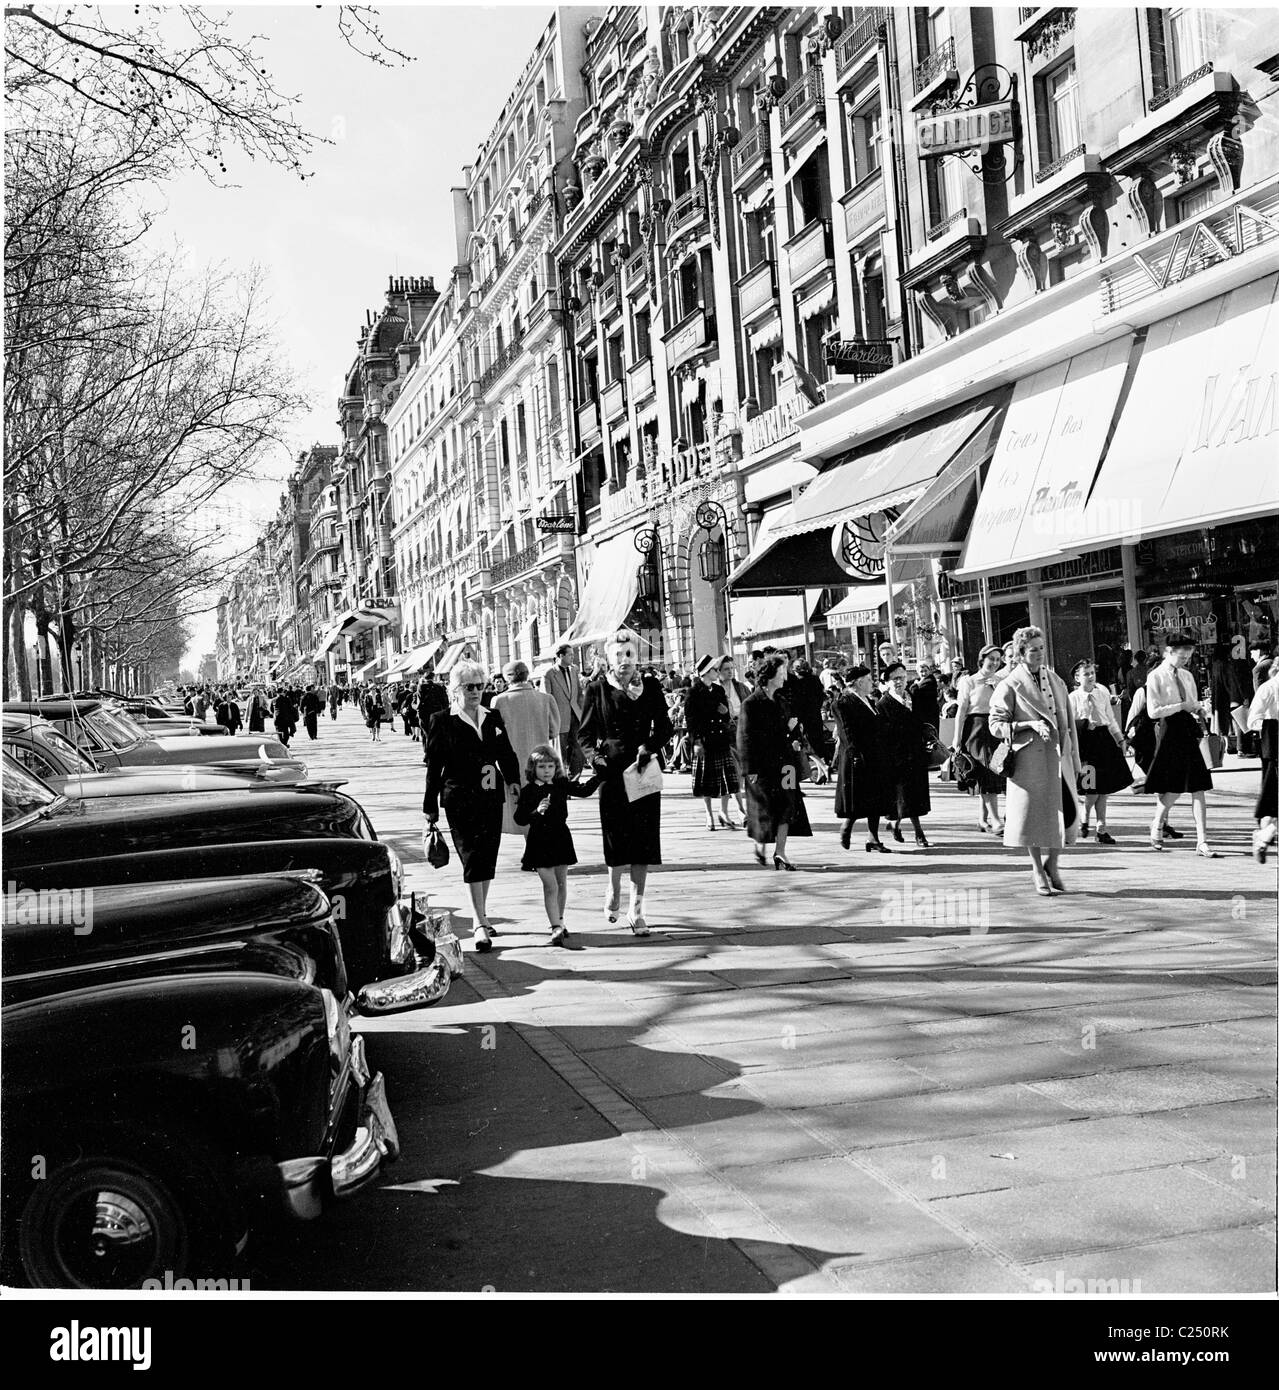 Paris, France, années 1950. Les Parisiens marchent le long du pavé dans l'élégante rue bordée de boutiques, le champs-Elysées, l'une des rues les plus célèbres du monde. Banque D'Images